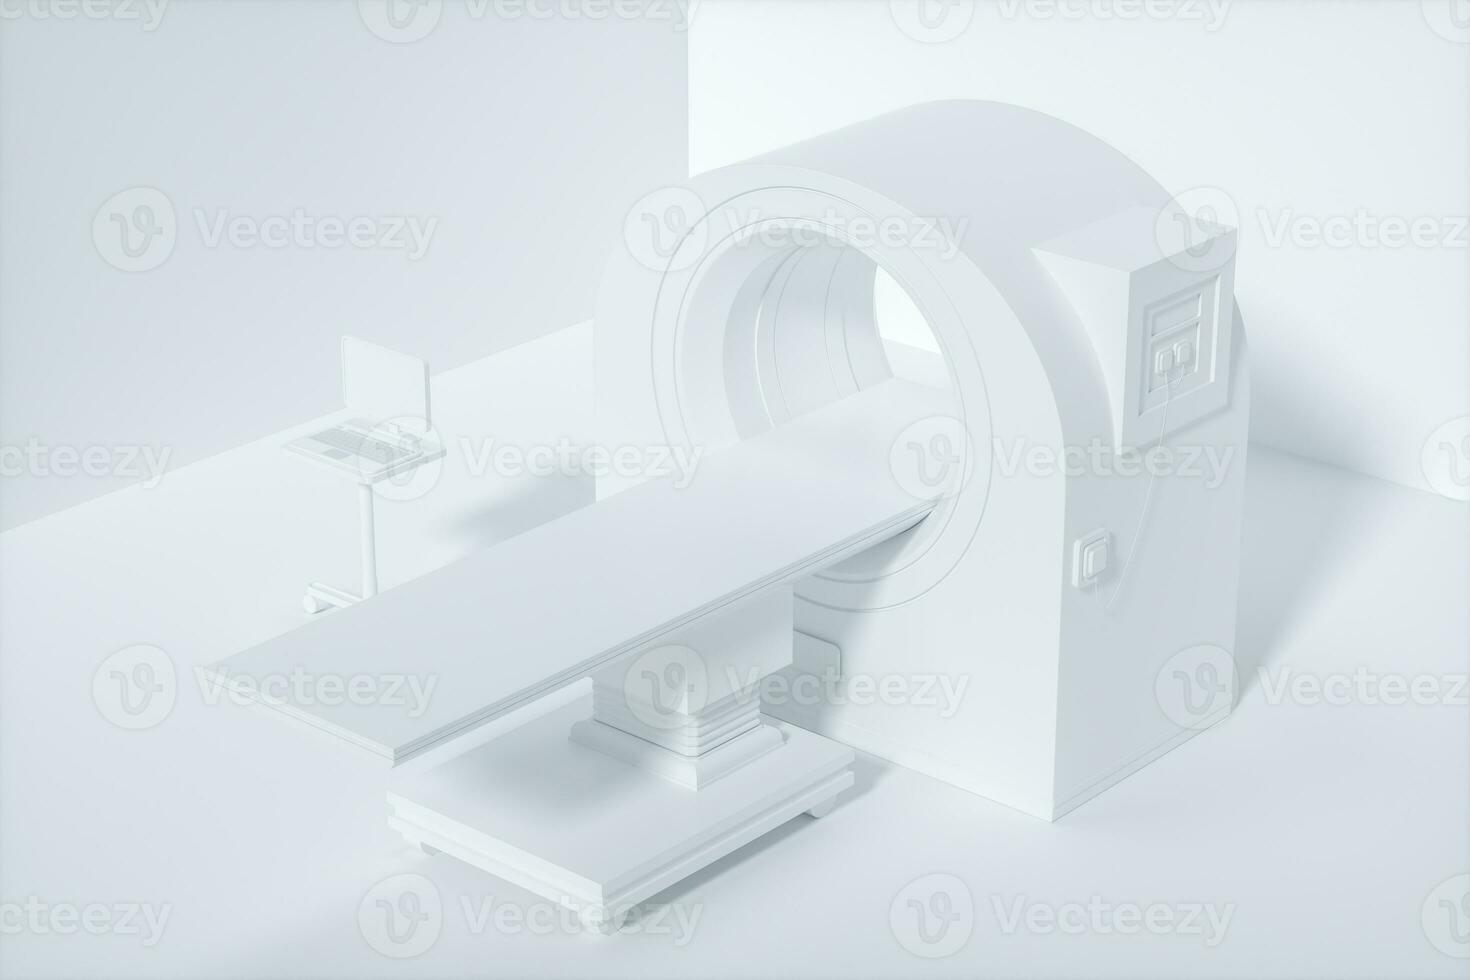 el médico equipo Connecticut máquina en el blanco vacío habitación, 3d representación. foto